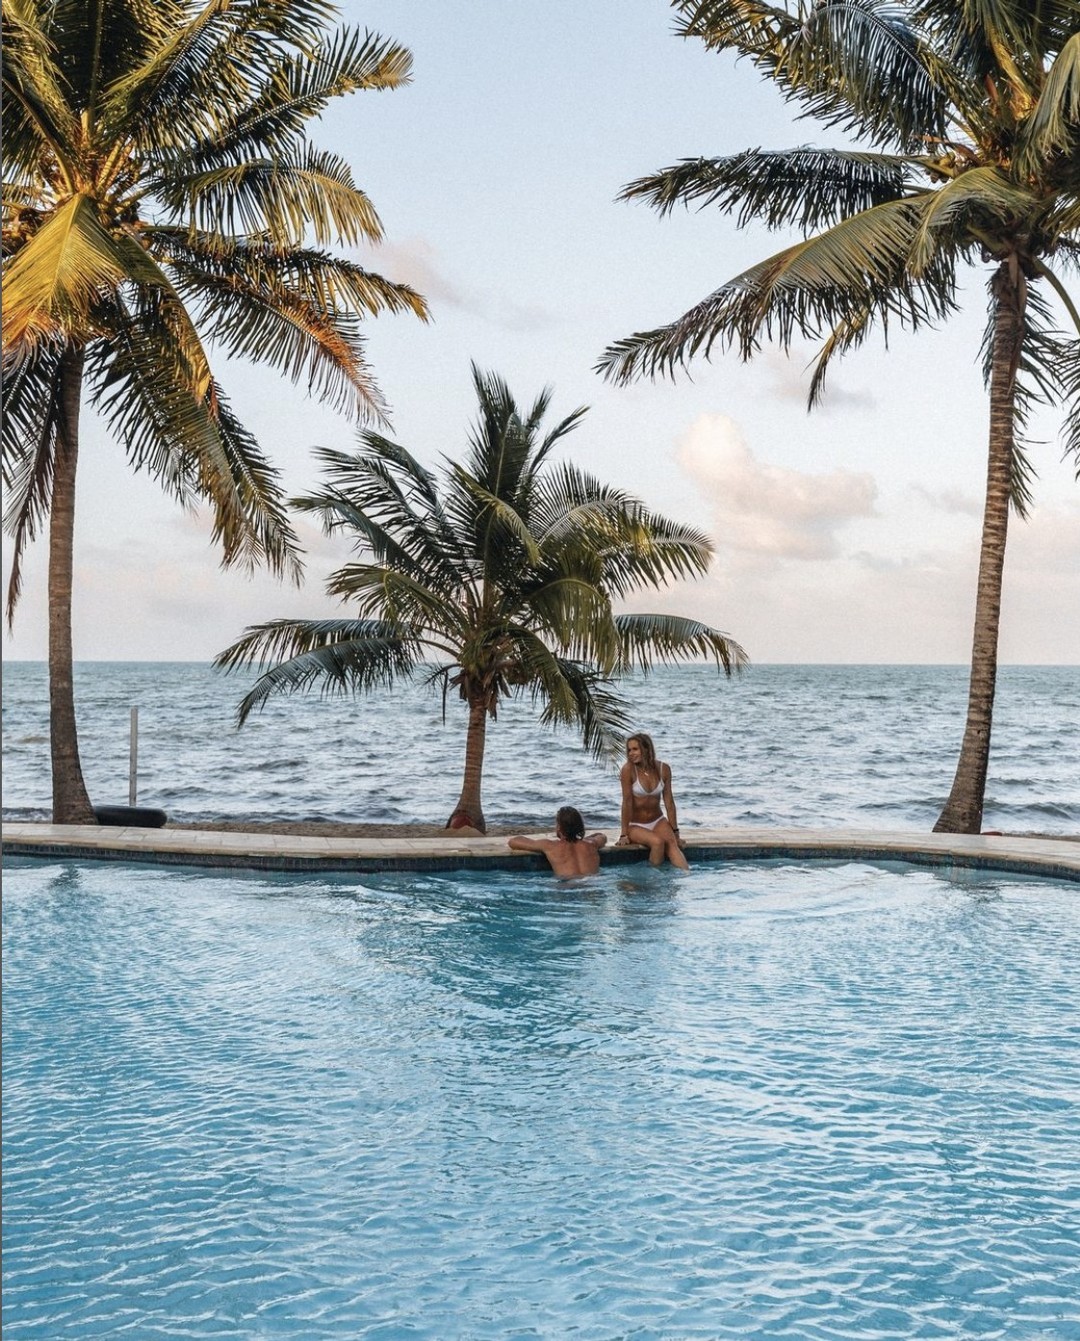 En Belice, la decisión más difícil que puede tener que tomar es la de descansar en la piscina o en la playa. ¿Qué eliges? #travelbelize📸- @almond.beach.resort